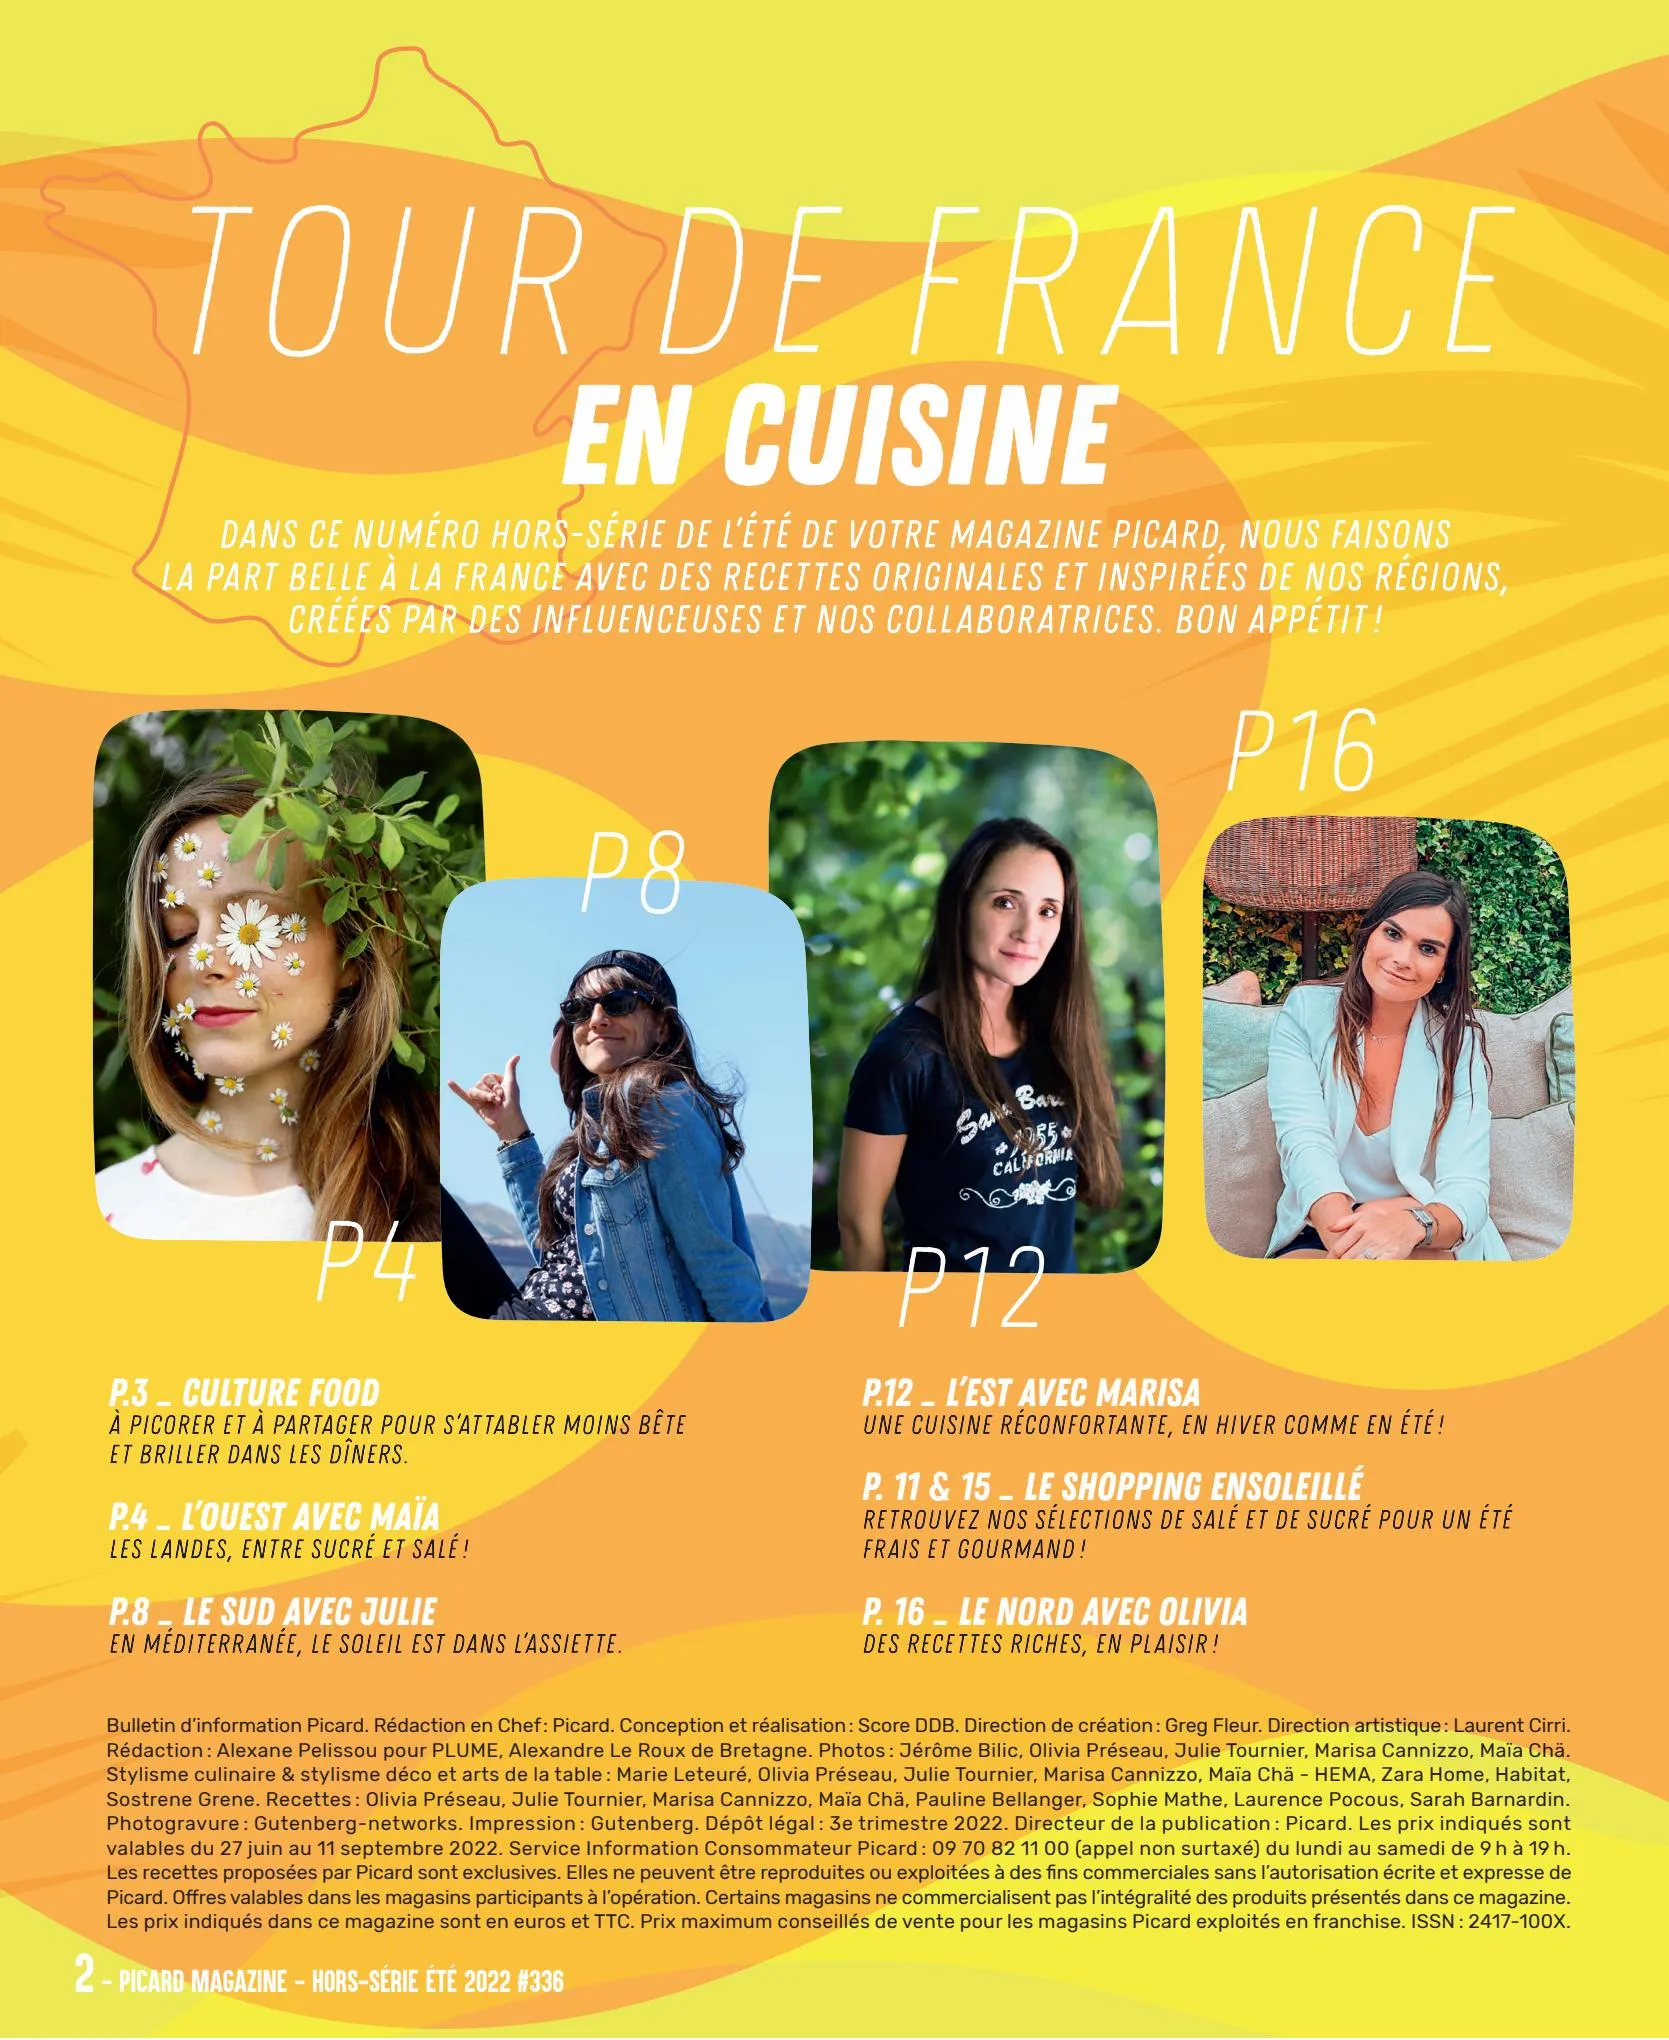 Catalogue La France en Cuisine, page 00002